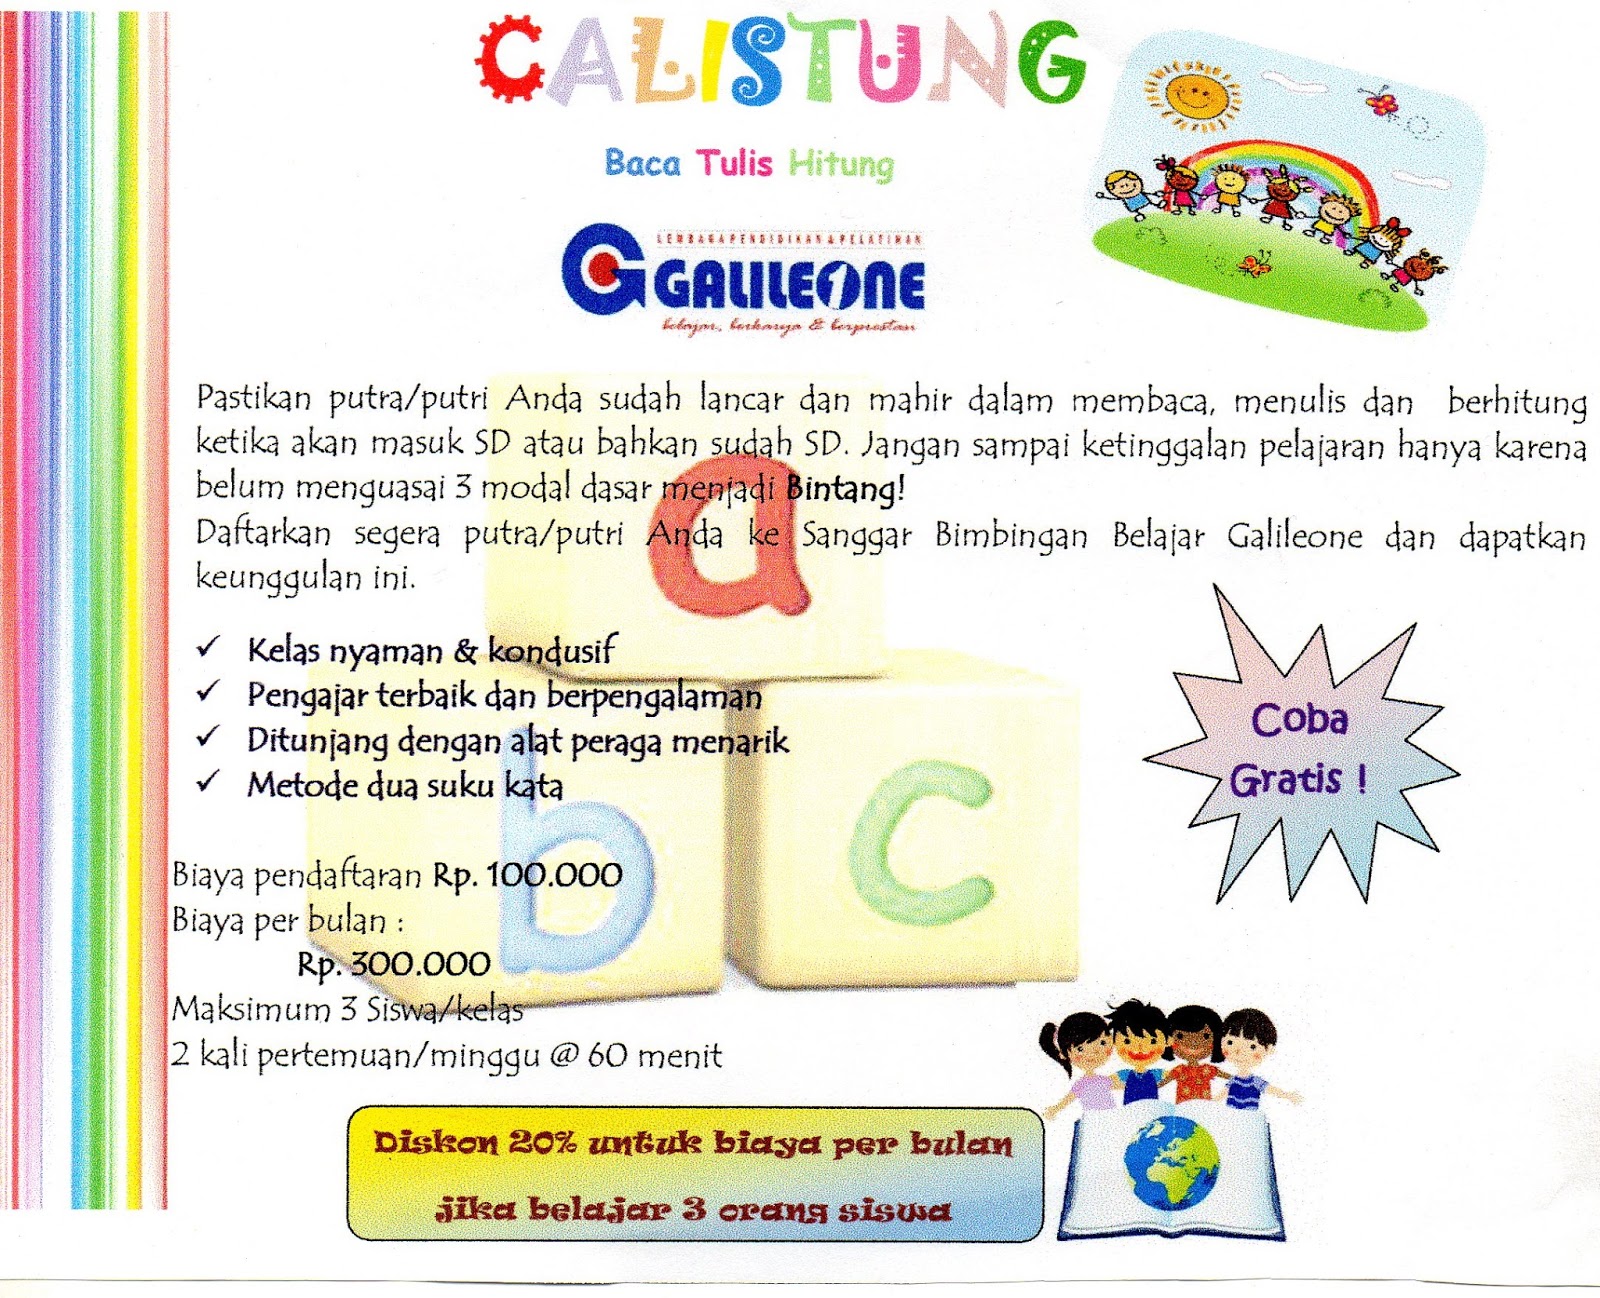 Bimbel Galileone menyediakan bimbingan dari pra sekolah hingga SMA